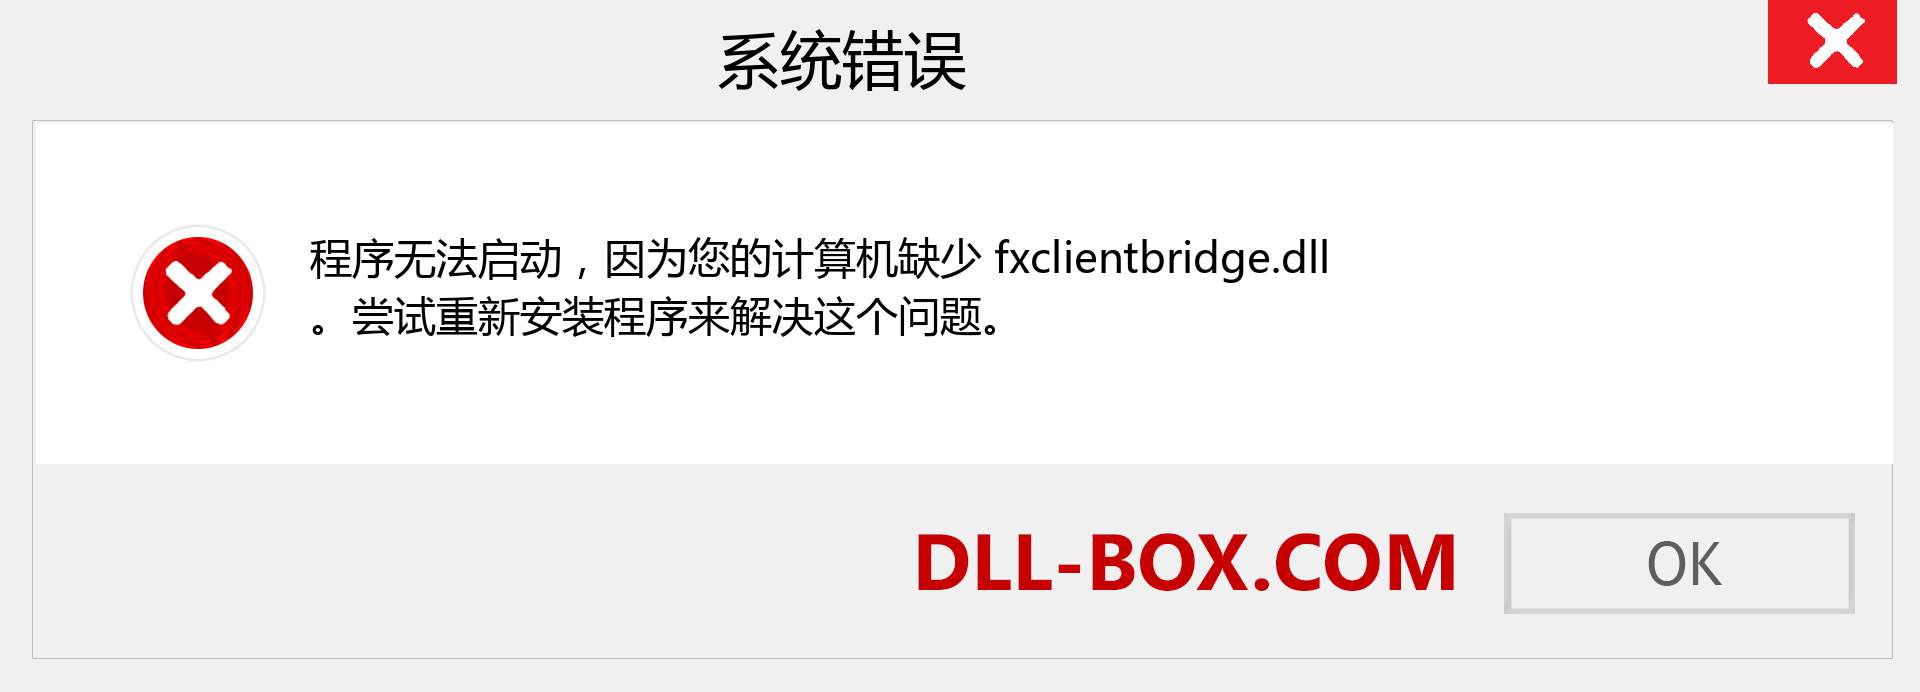 fxclientbridge.dll 文件丢失？。 适用于 Windows 7、8、10 的下载 - 修复 Windows、照片、图像上的 fxclientbridge dll 丢失错误